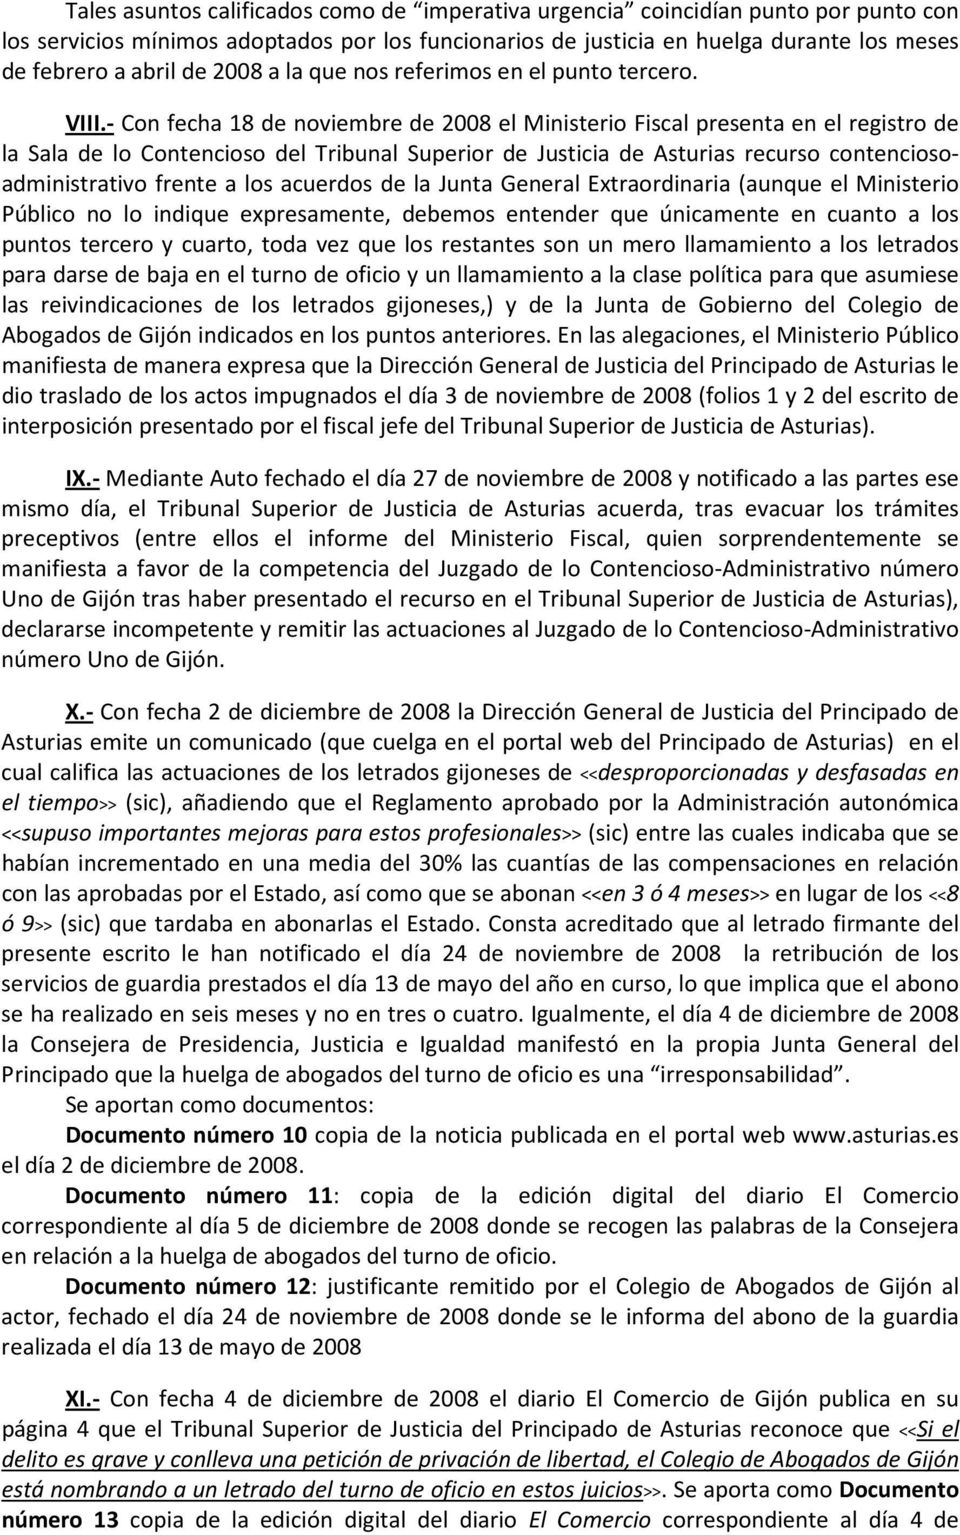 - Con fecha 18 de noviembre de 2008 el Ministerio Fiscal presenta en el registro de la Sala de lo Contencioso del Tribunal Superior de Justicia de Asturias recurso contenciosoadministrativo frente a